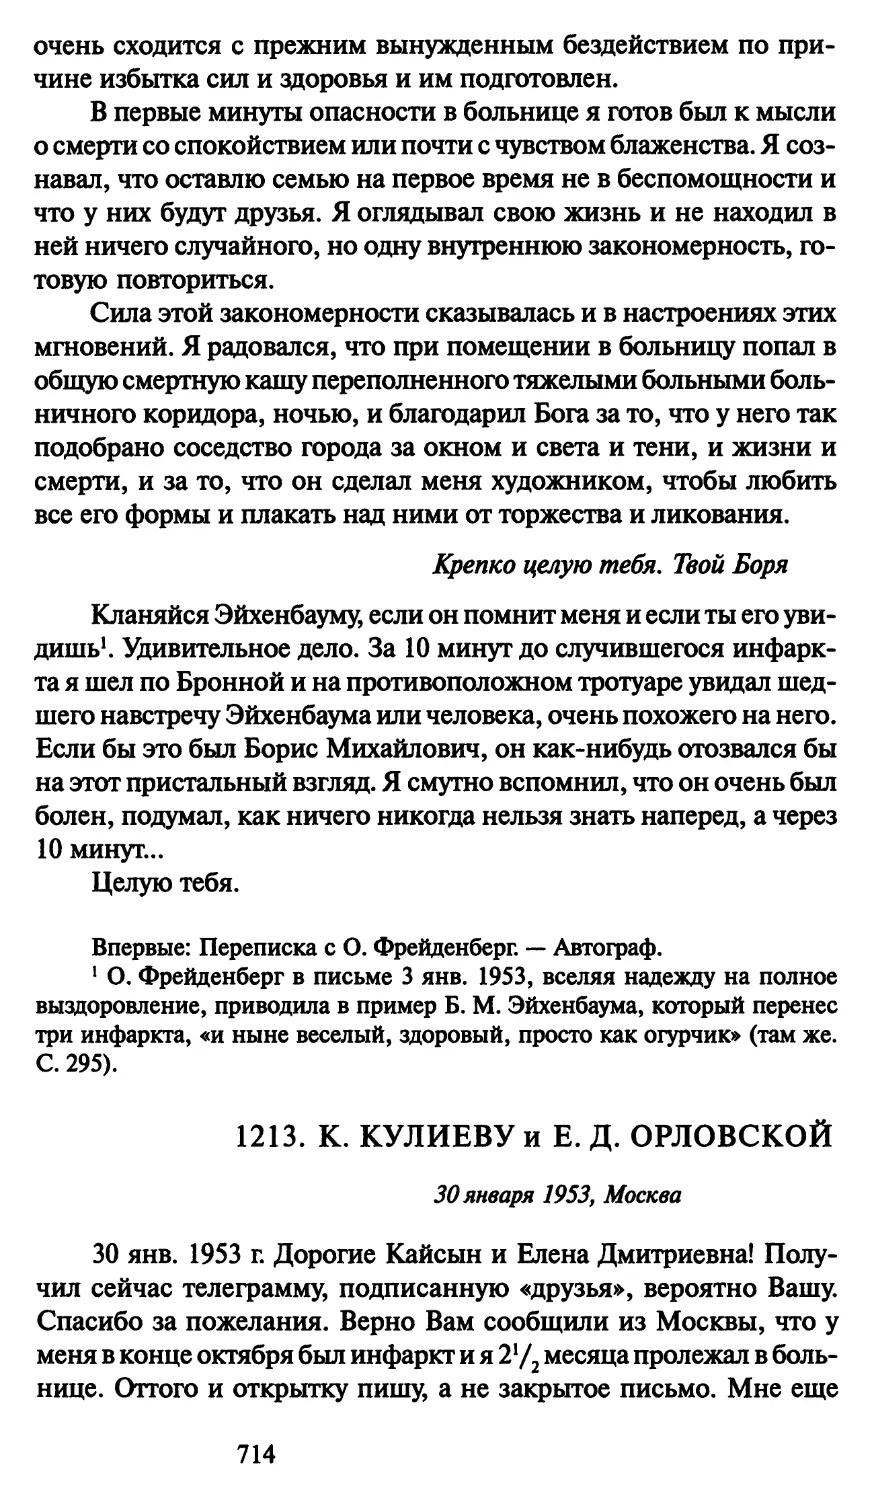 1213. К. Кулиеву и Е. Д. Орловской 30 января 1953